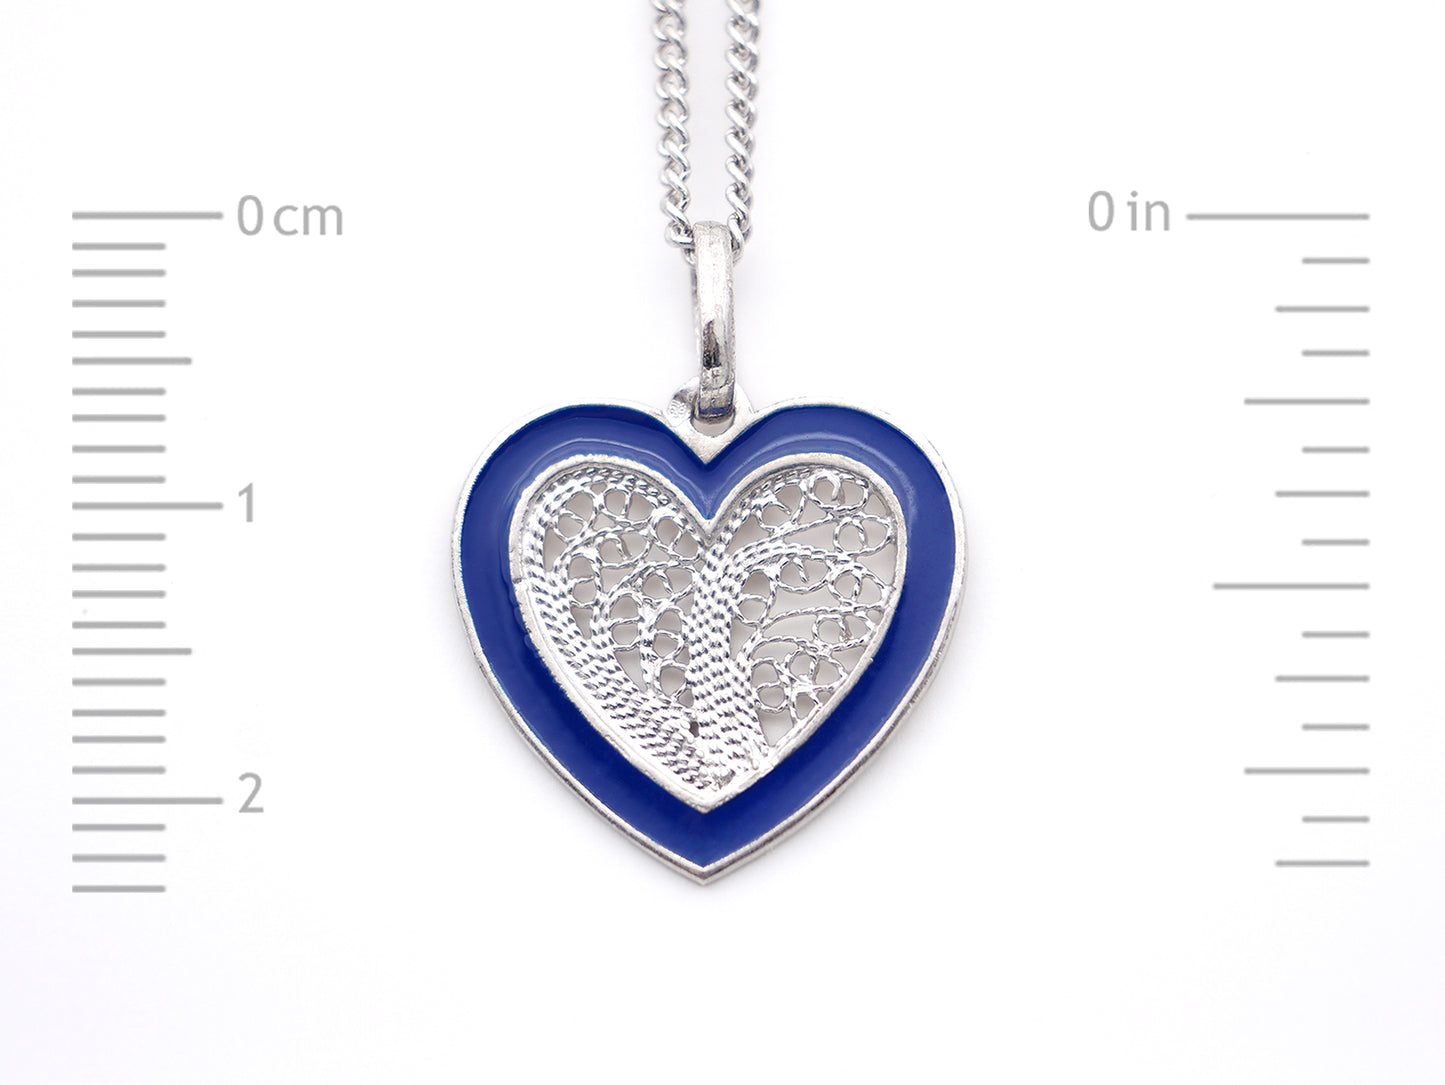 Colar Coração Médio Esmalte Azul, Filigrana Portuguesa, Prata de Lei 925 - Medida coração